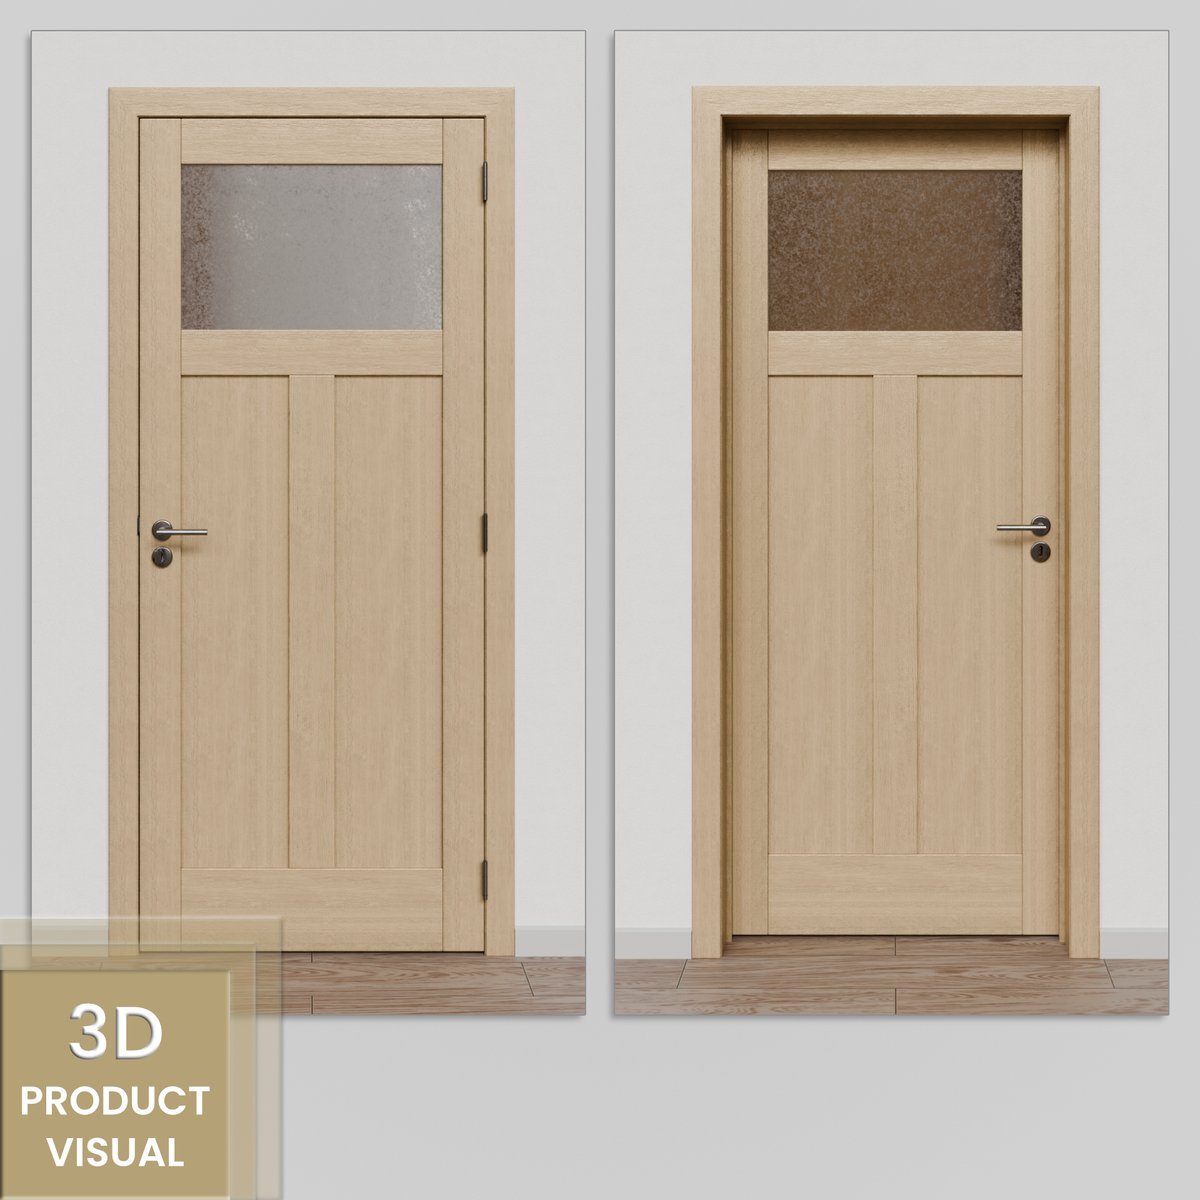 Ontdek de impact van 3D visuals met deze twee renders die een massief houten binnendeur met sierglas in beeld brengen. Als ervaren 3D artist heb ik mij gespecialiseerd in het vervaardigen van realistische renders voor productdesign en architectuur. #freelance #freelancer